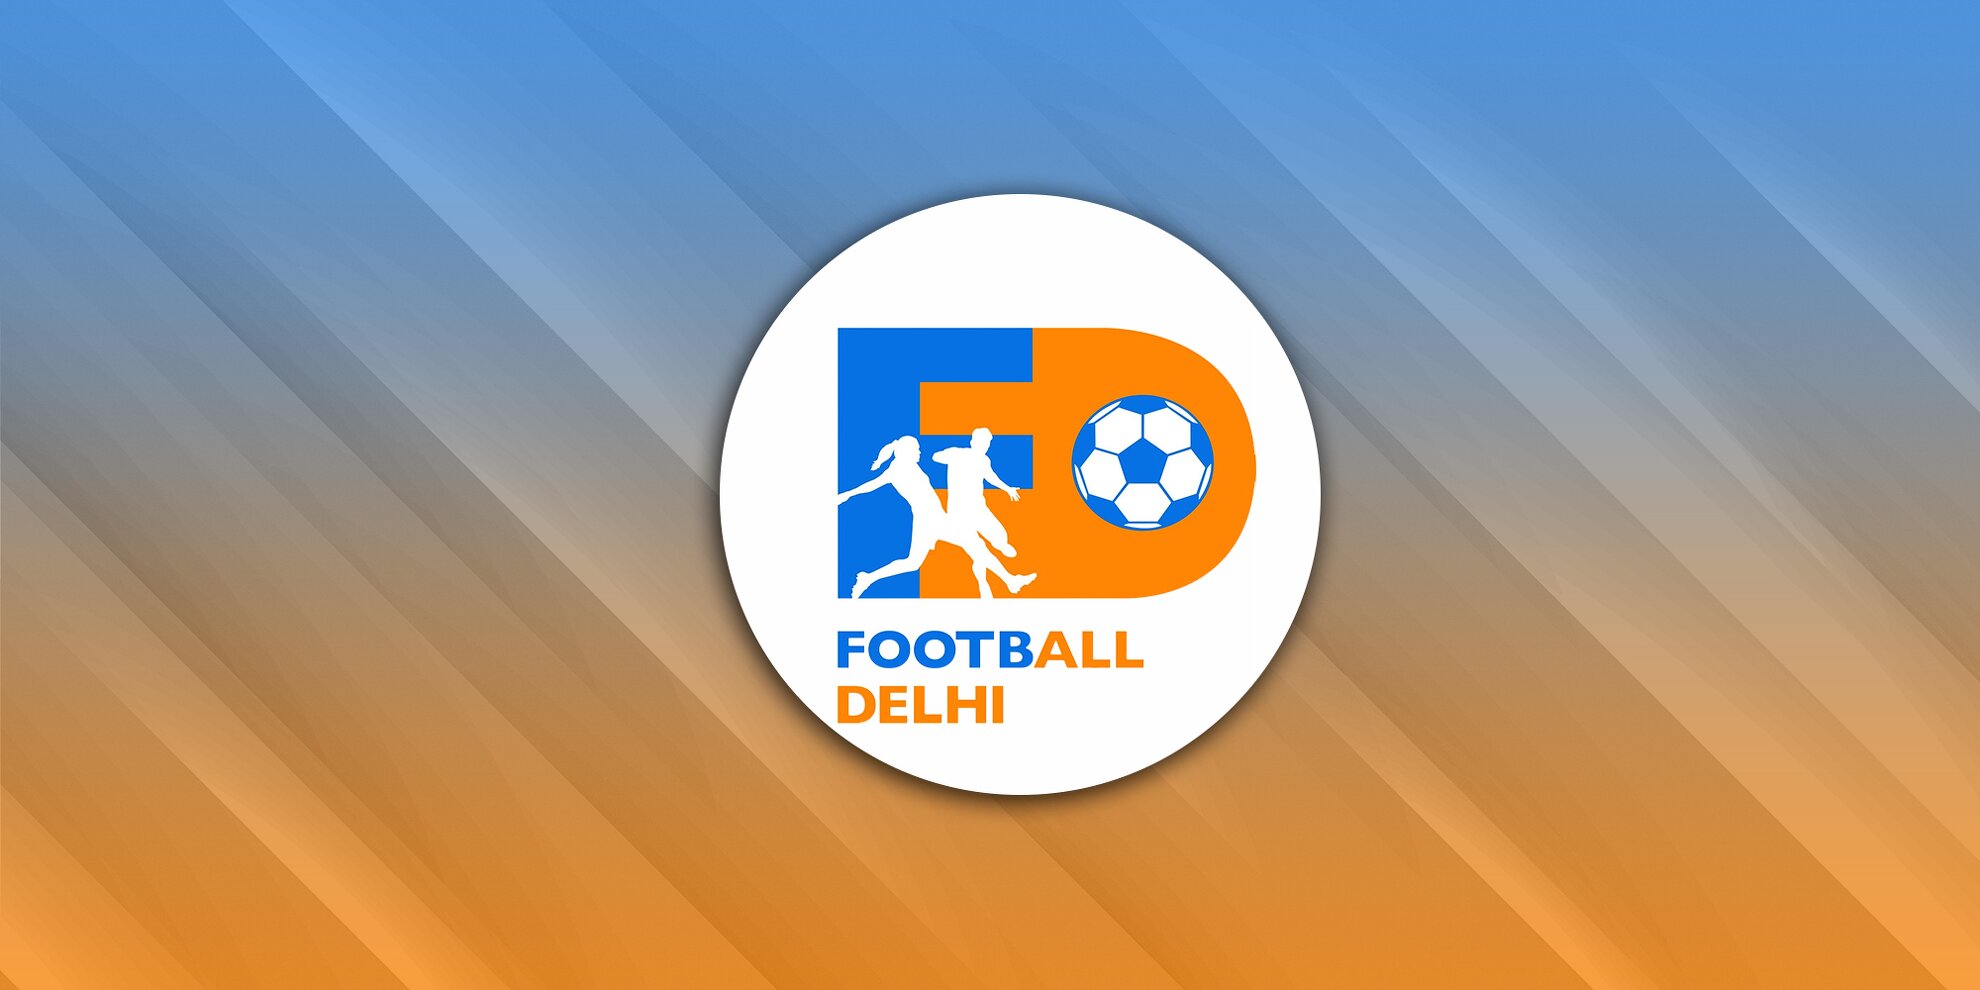 Football Delhi 2nd Division League Qualifiers